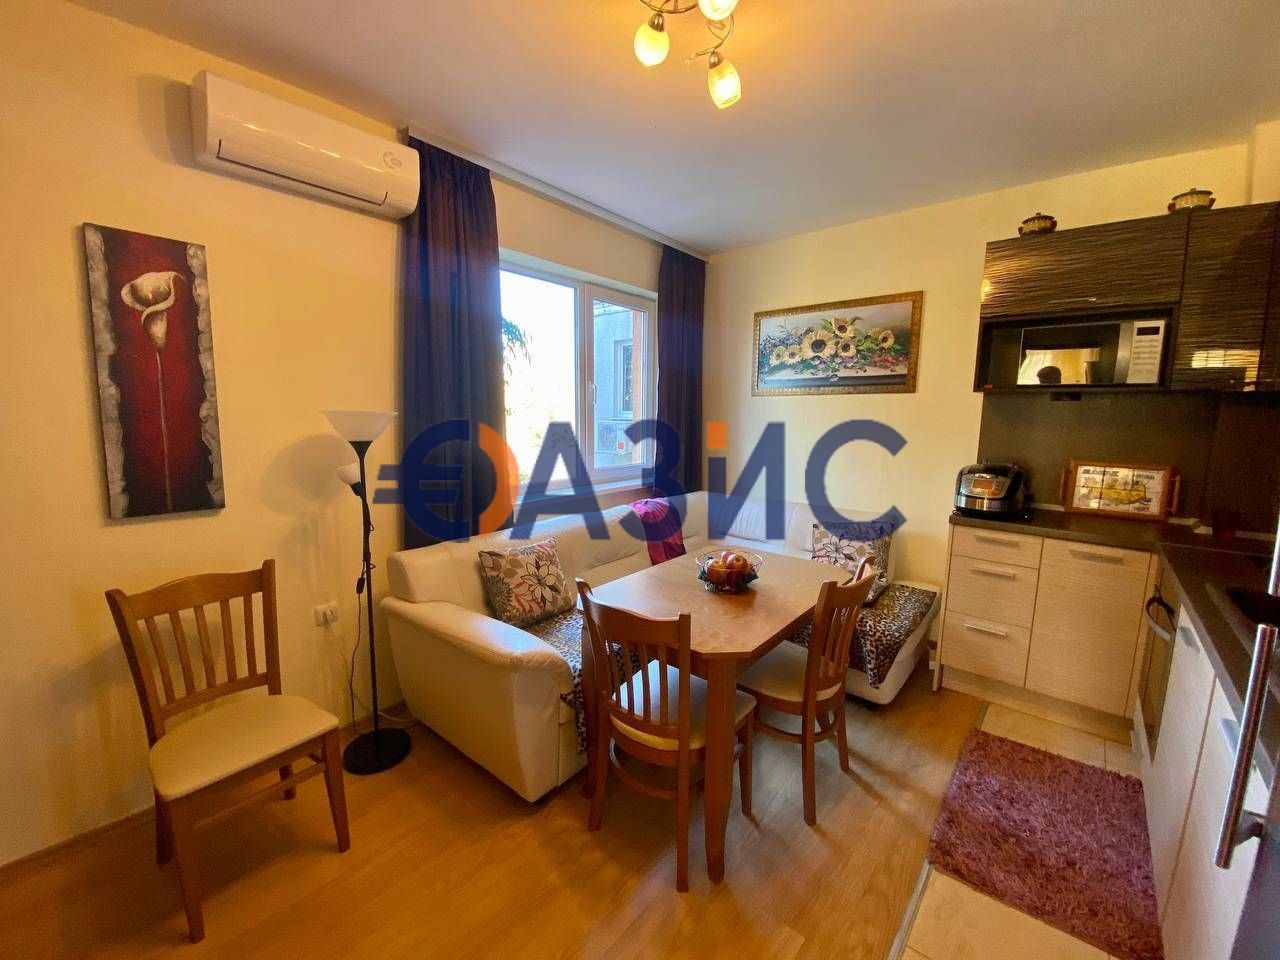 Apartment at Sunny Beach, Bulgaria, 92 sq.m - picture 1